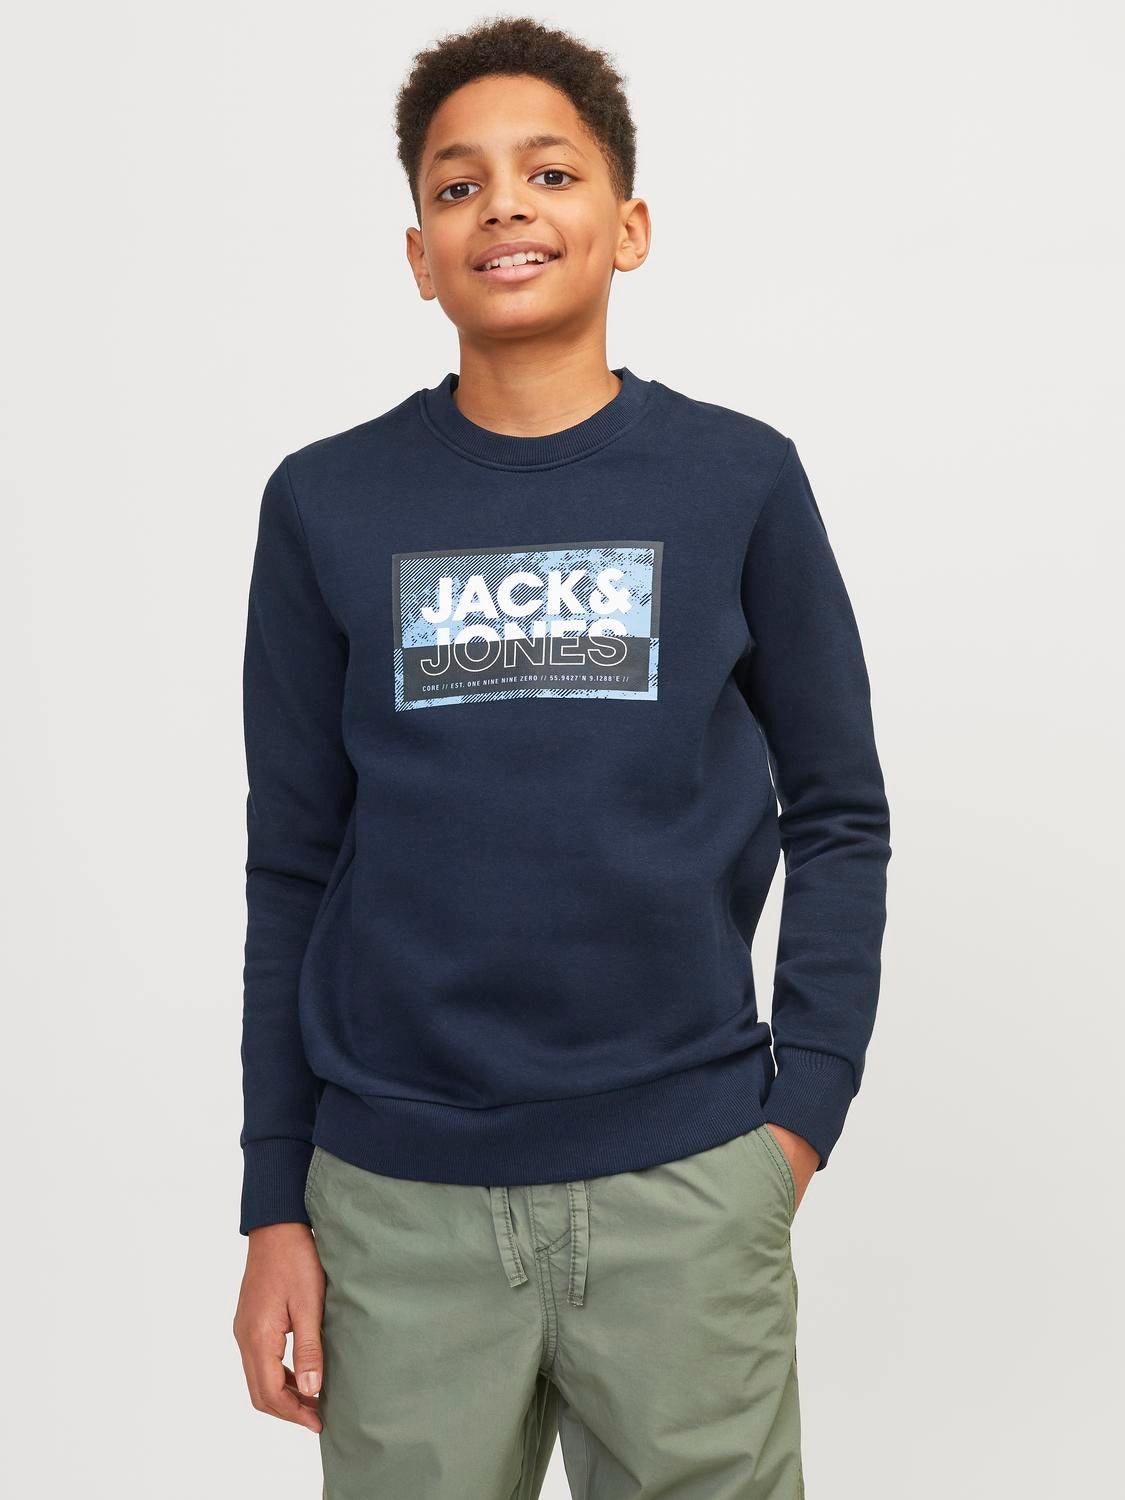 Jack & Jones Nadruk Bluza z okrągłym dekoltem Dla chłopców -Navy Blazer - 12257439